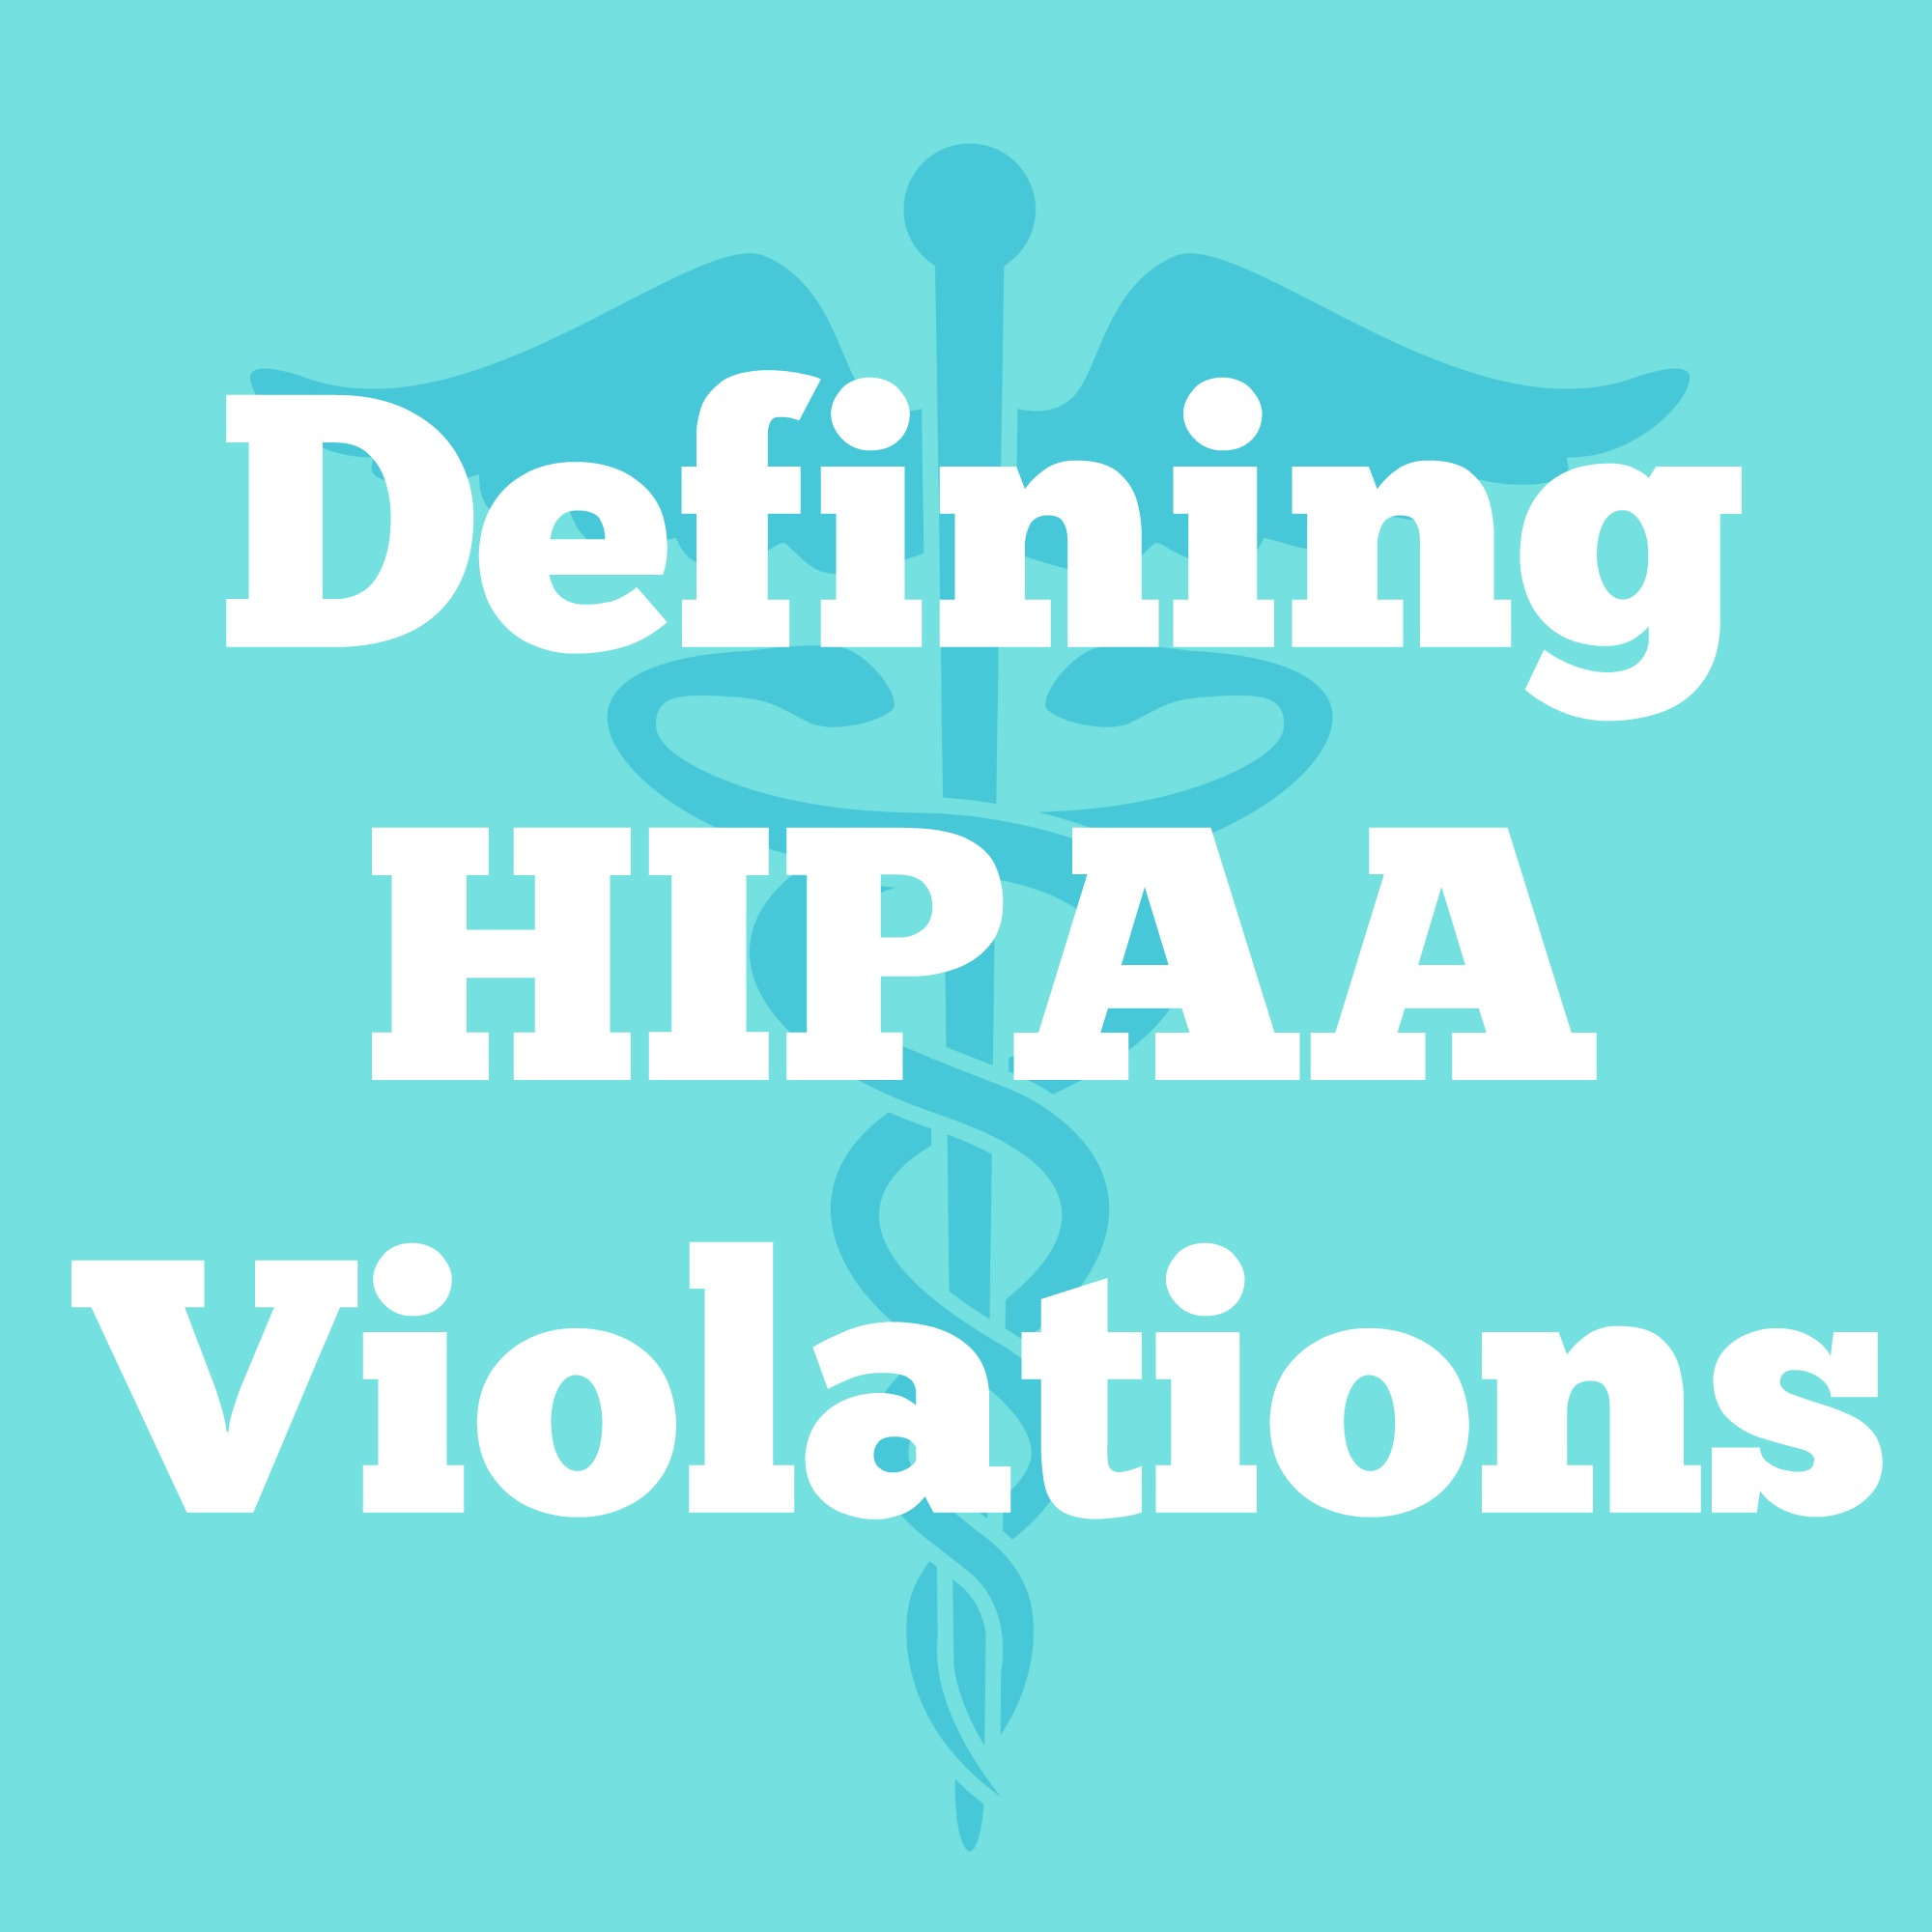 hipaa violations